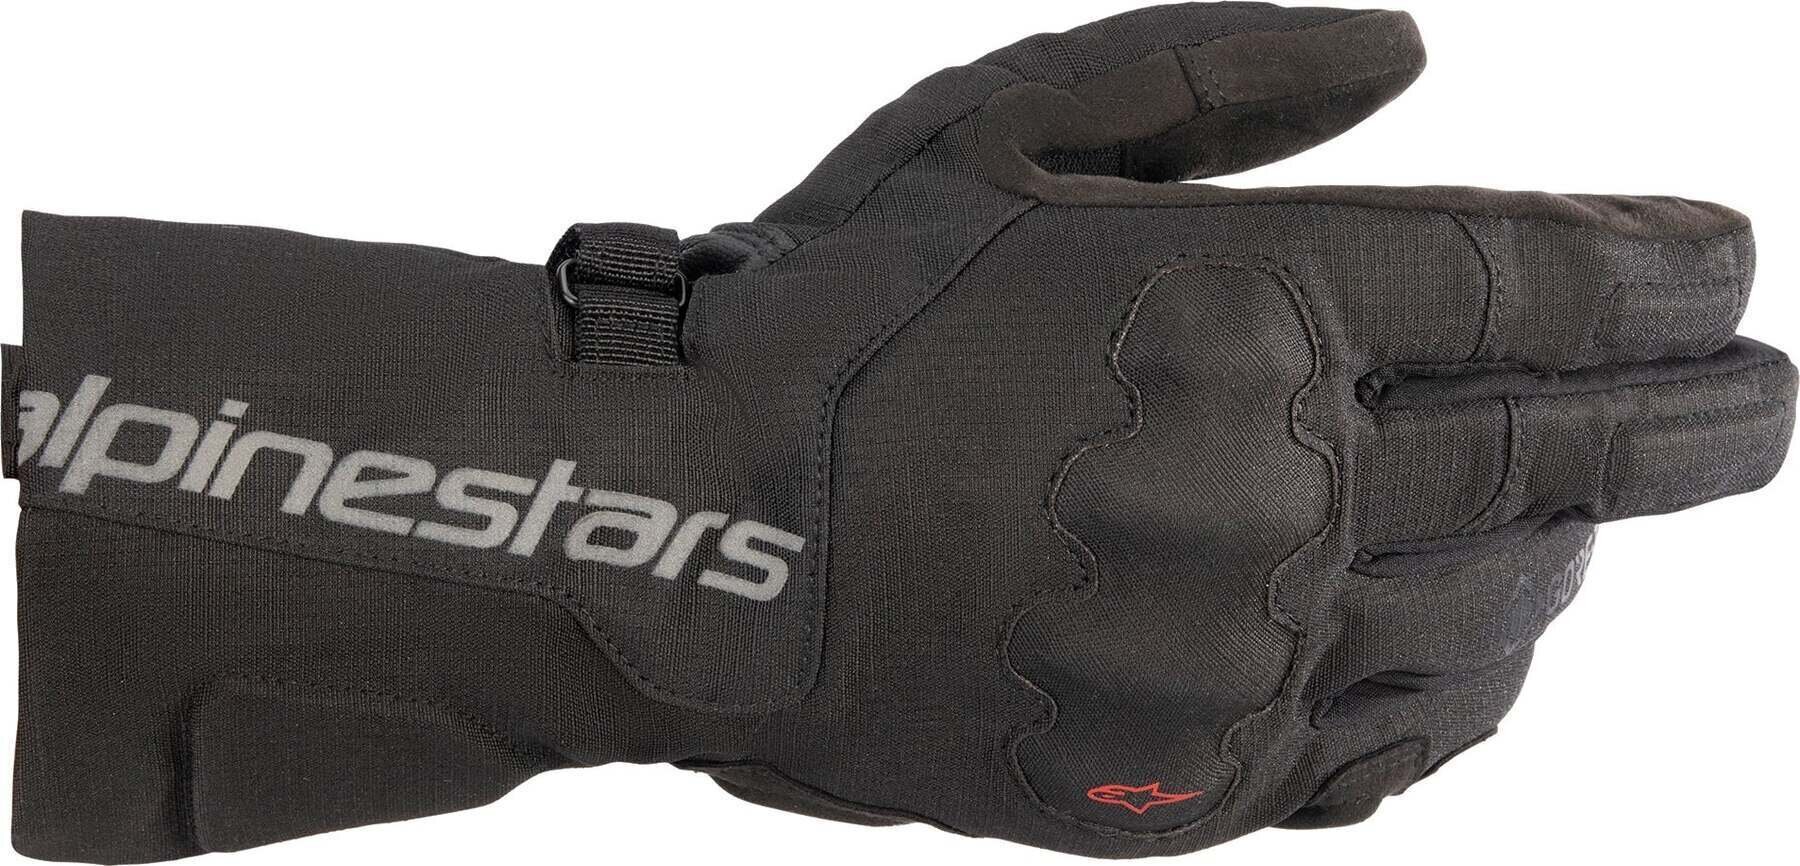 Motorcycle Gloves Alpinestars WR-X Gore-Tex Gloves Black L Motorcycle Gloves